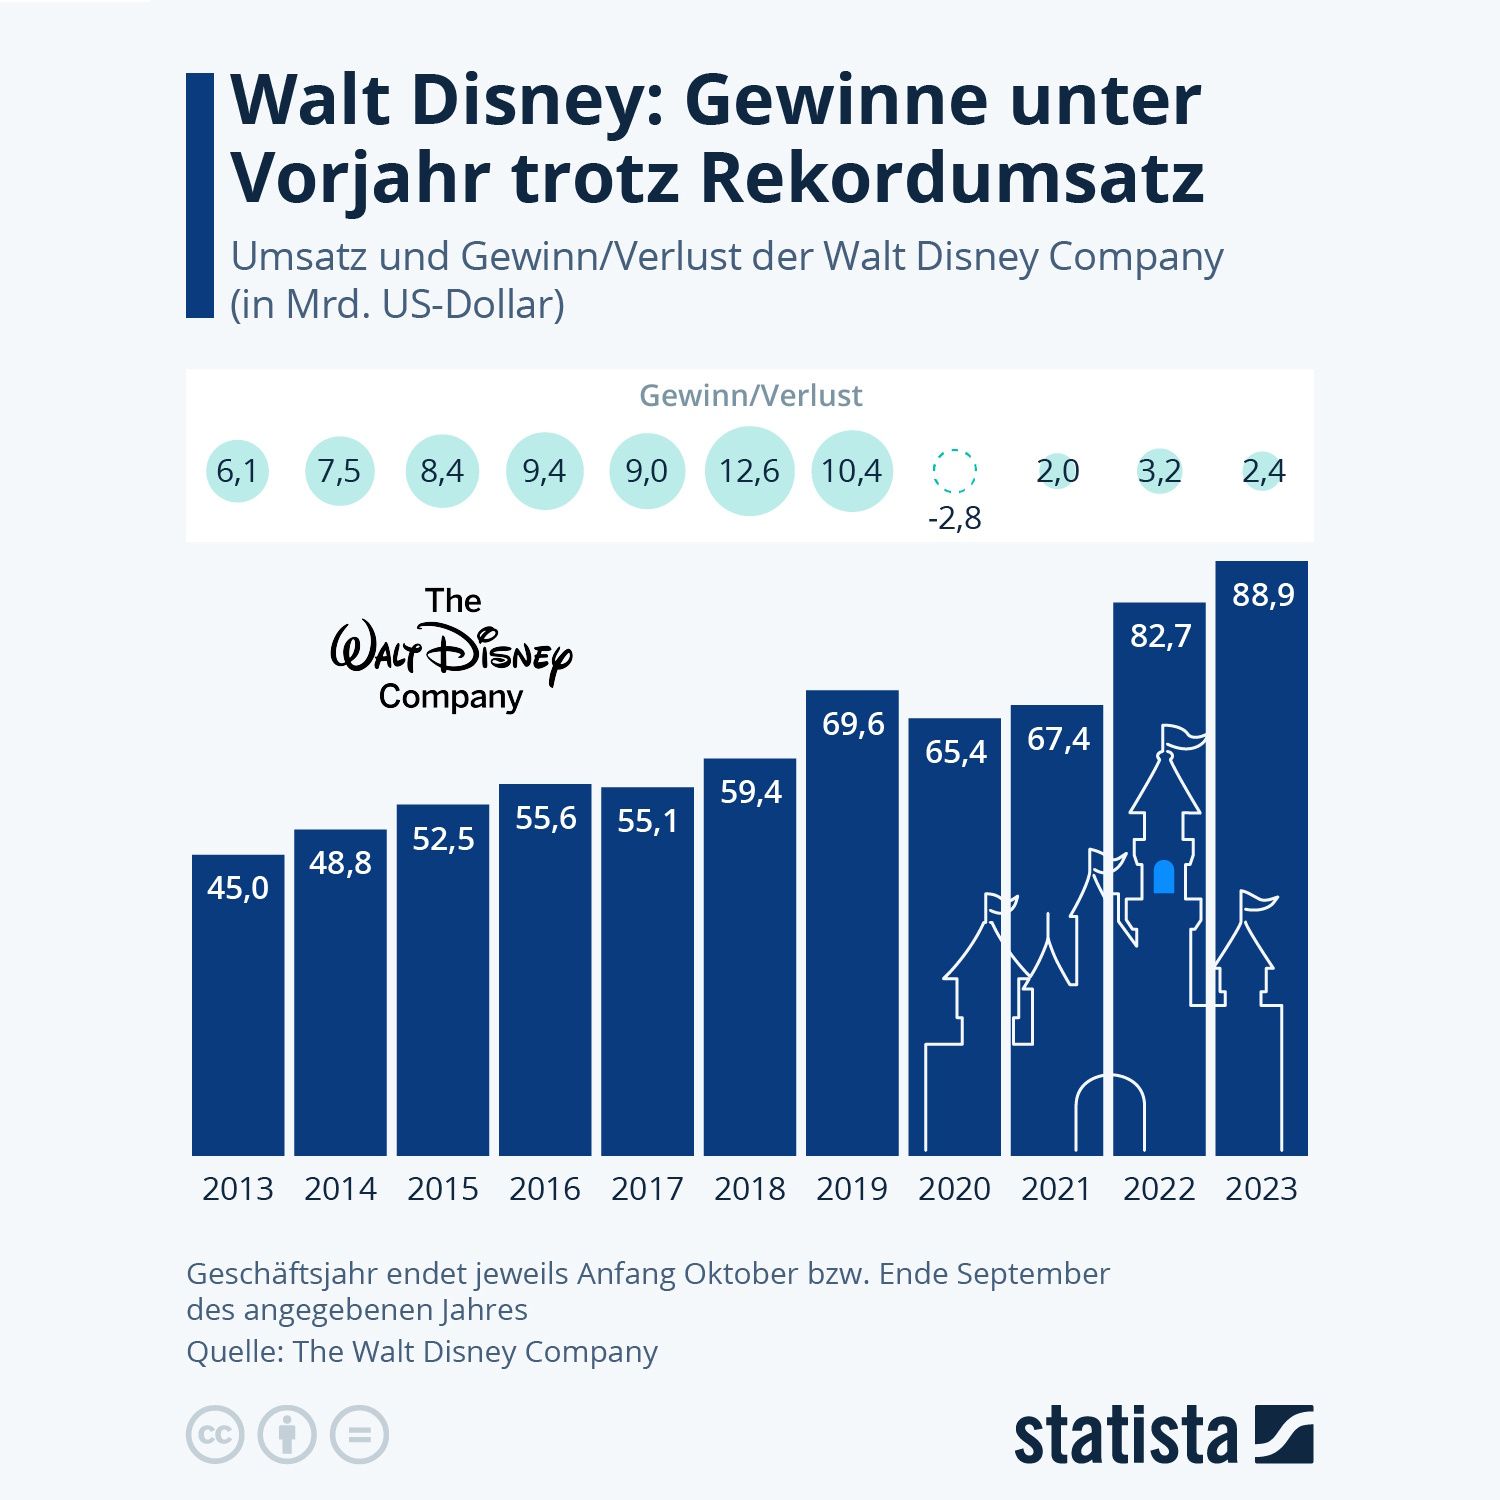 Disney: Rekordumsatz zum 100-jährigen Jubiläum